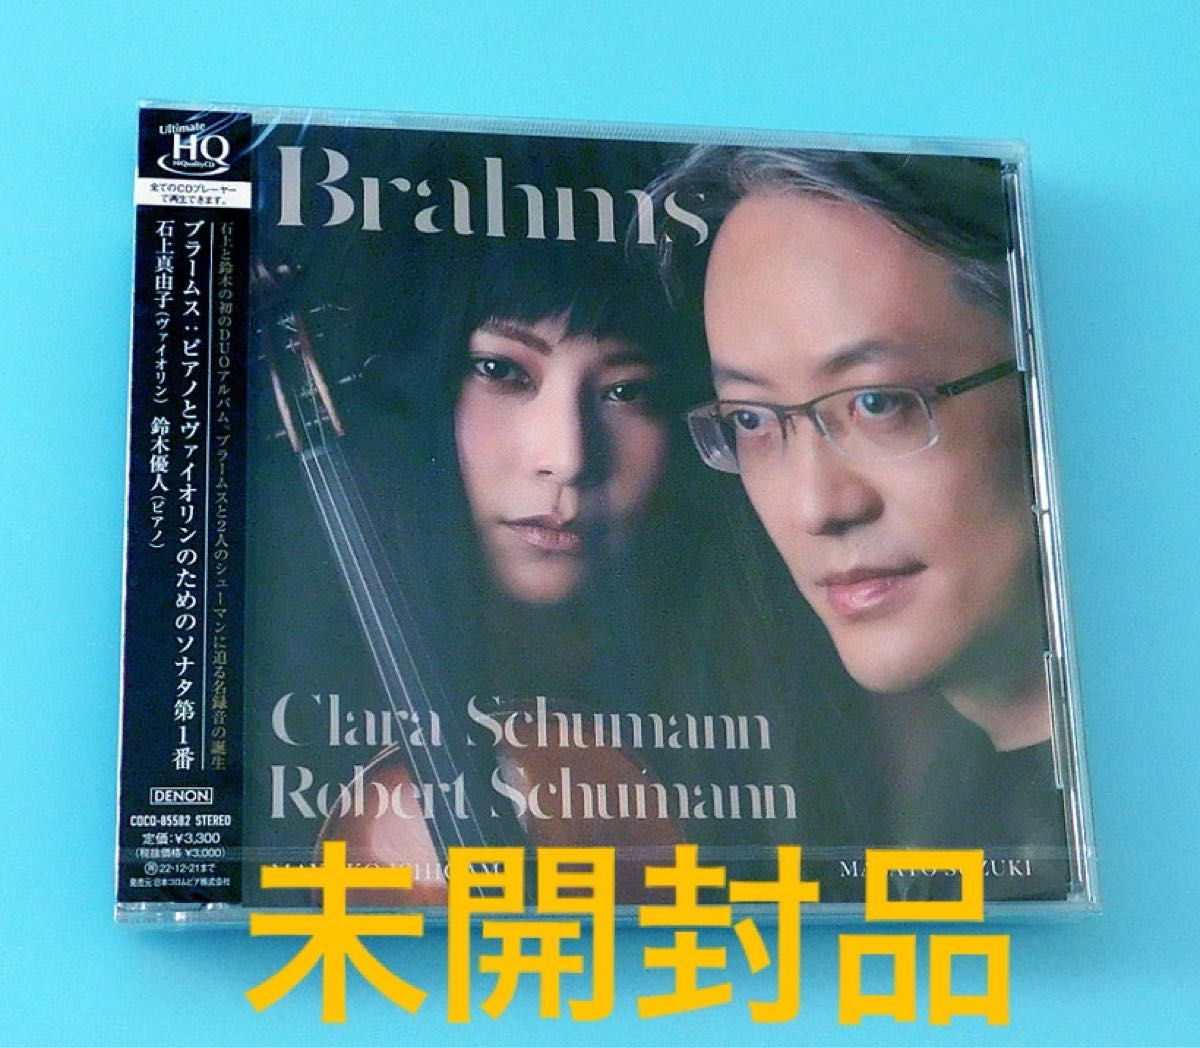 未開封CD ブラームス:ピアノとヴァイオリンのためのソナタ第1番 / 石上真由子 & 鈴木優人、UHQCD, 高音質